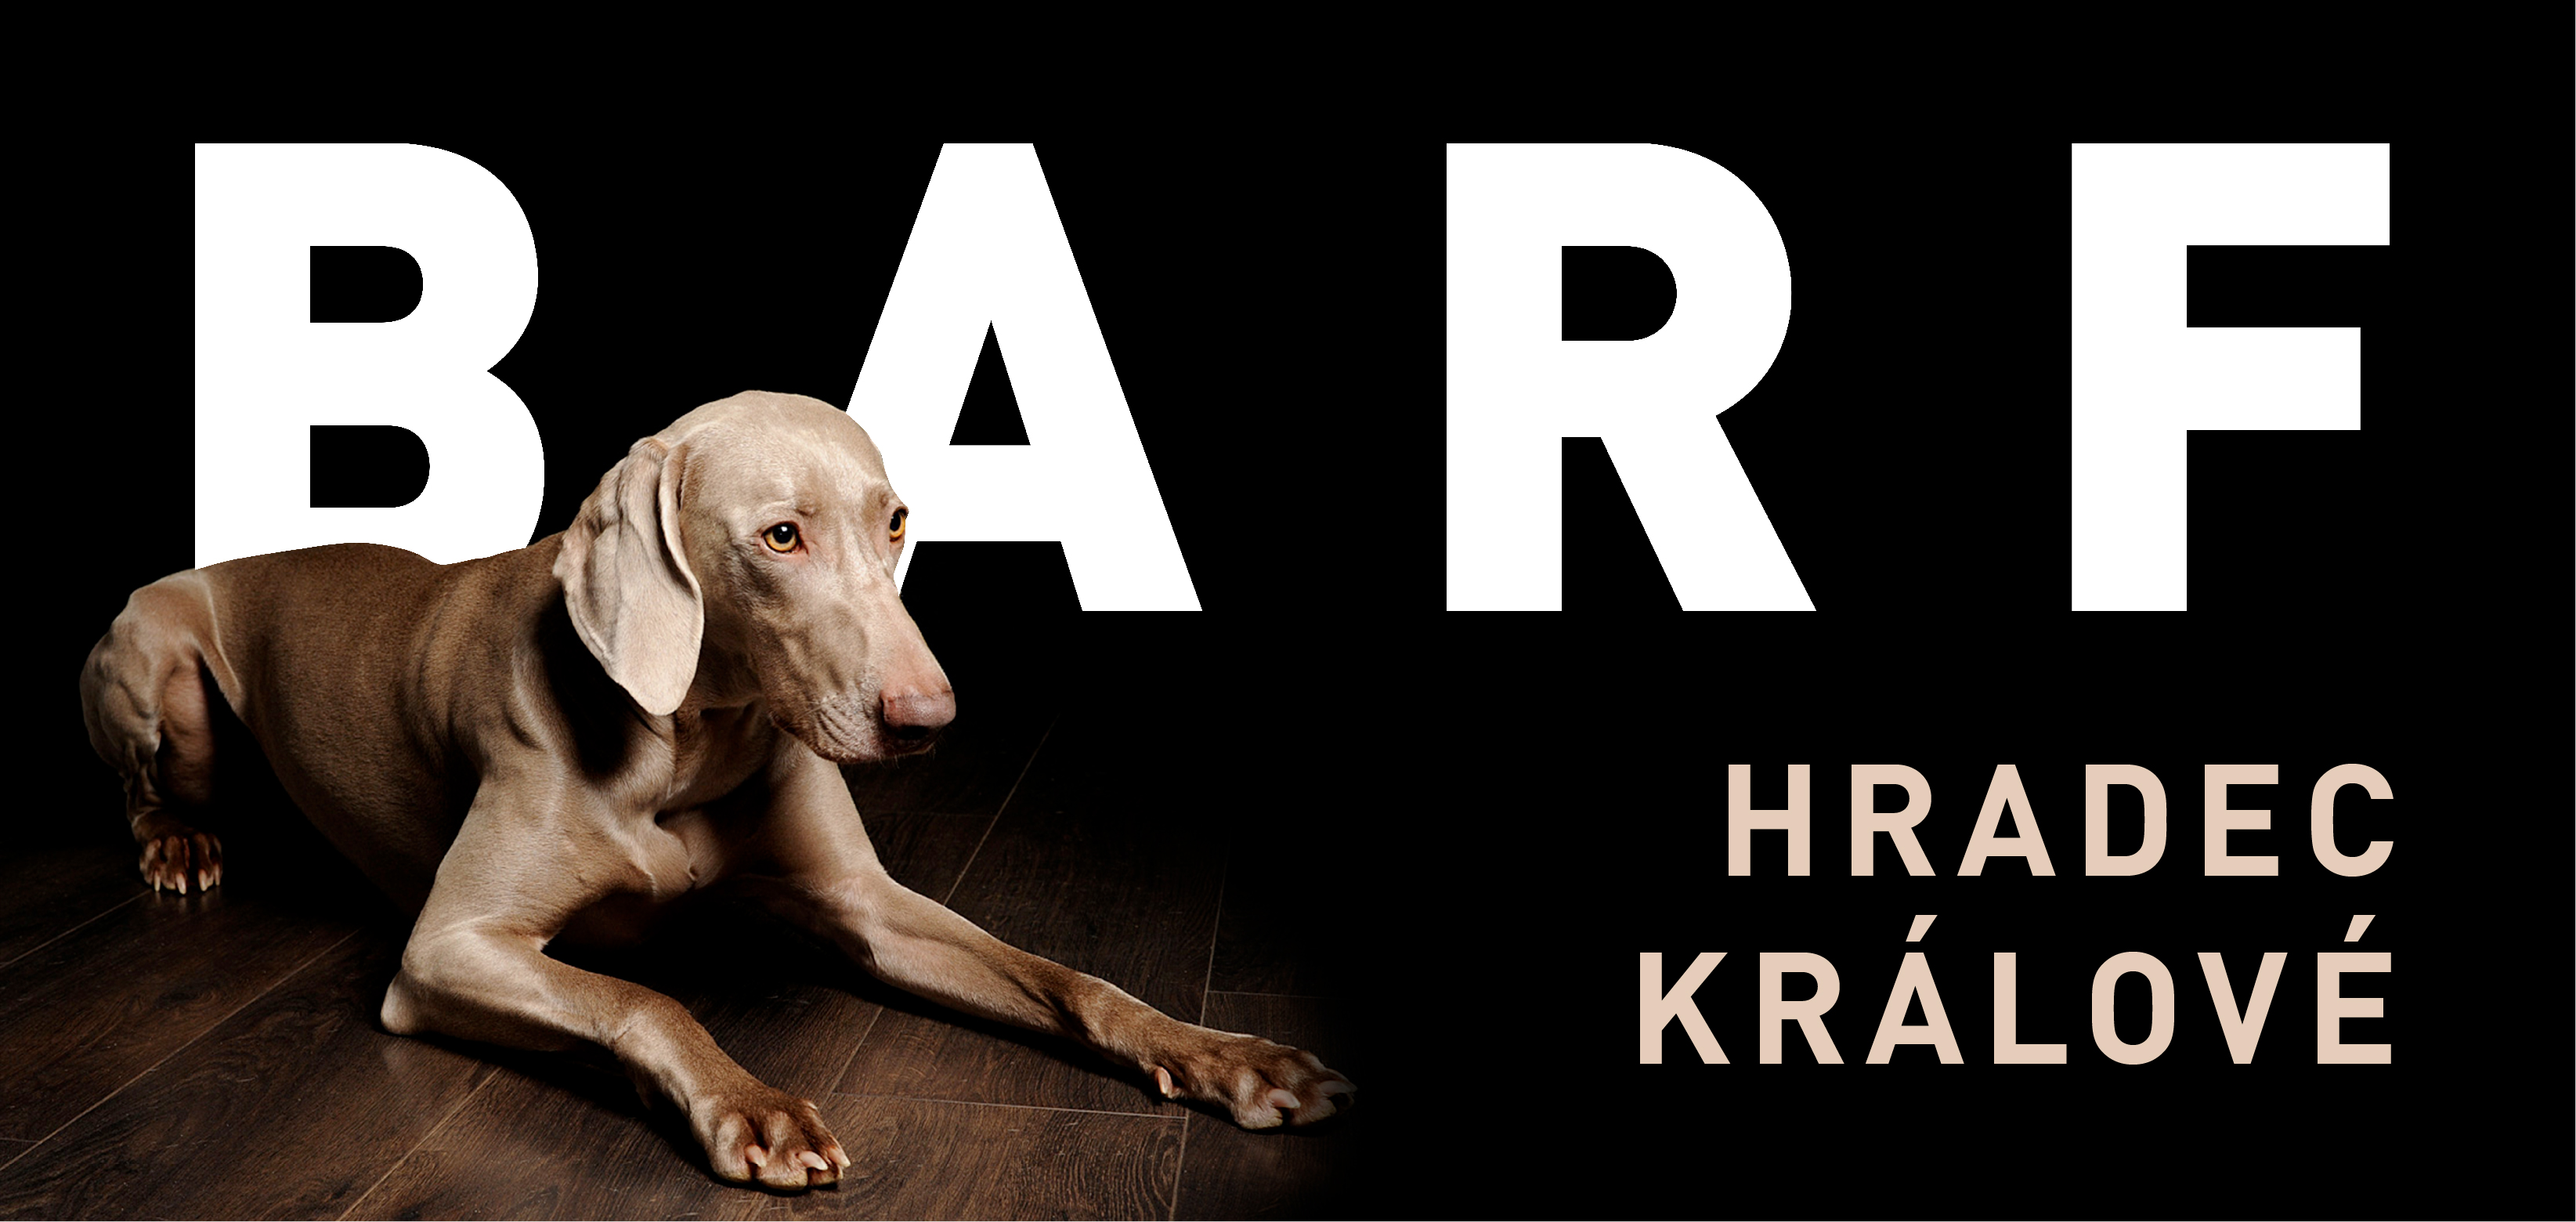 Vítá Vás BEST BARF Hradec Králové – prodejna mraženého masa, kvalitních granulí a doplňků pro psy a kočky